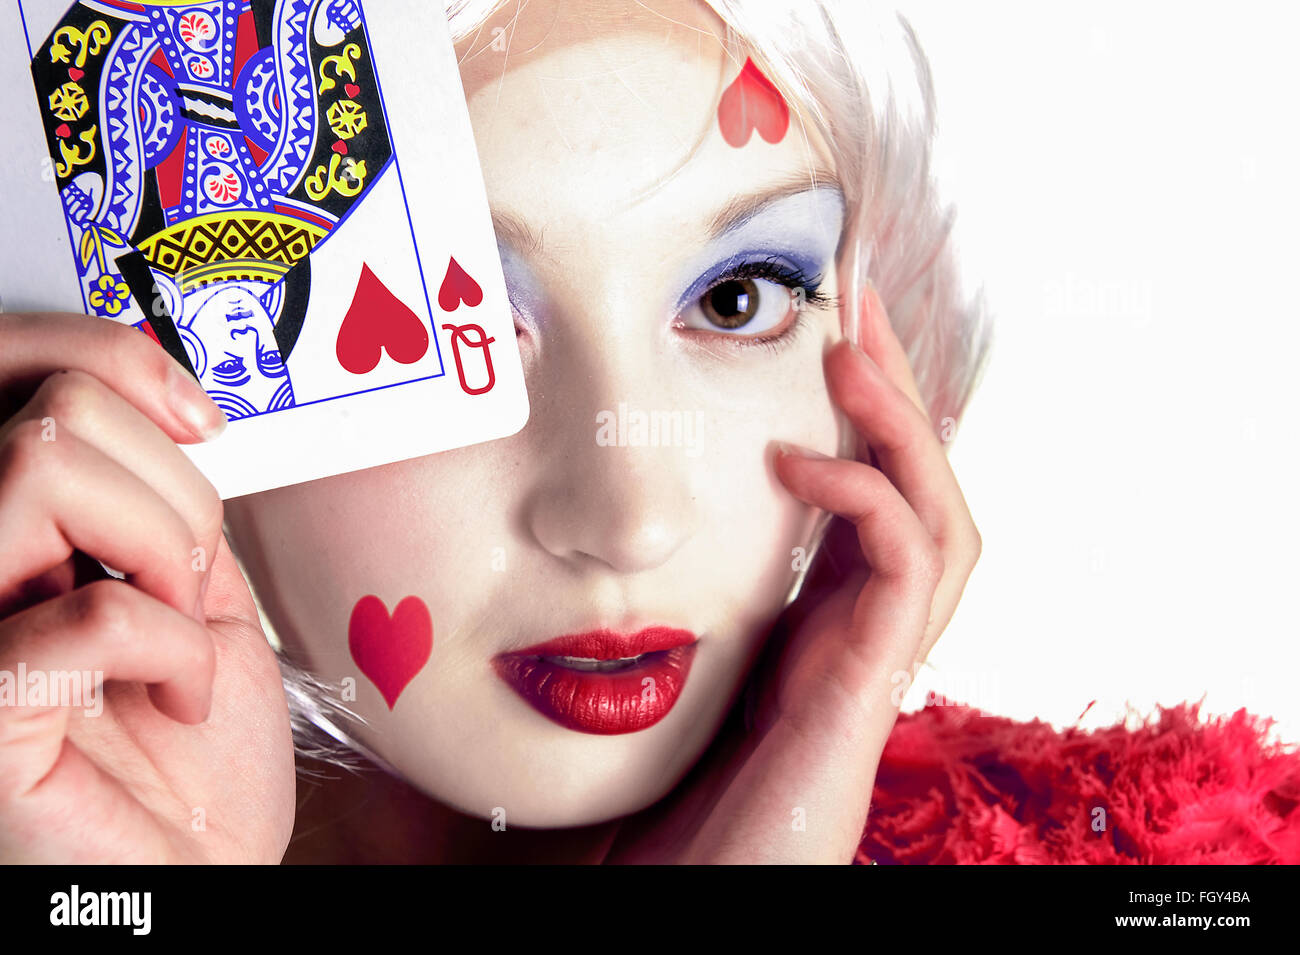 Jeune femme tenant une carte à jouer près de son visage avec la reine de cœur sur la carte et le visage Banque D'Images